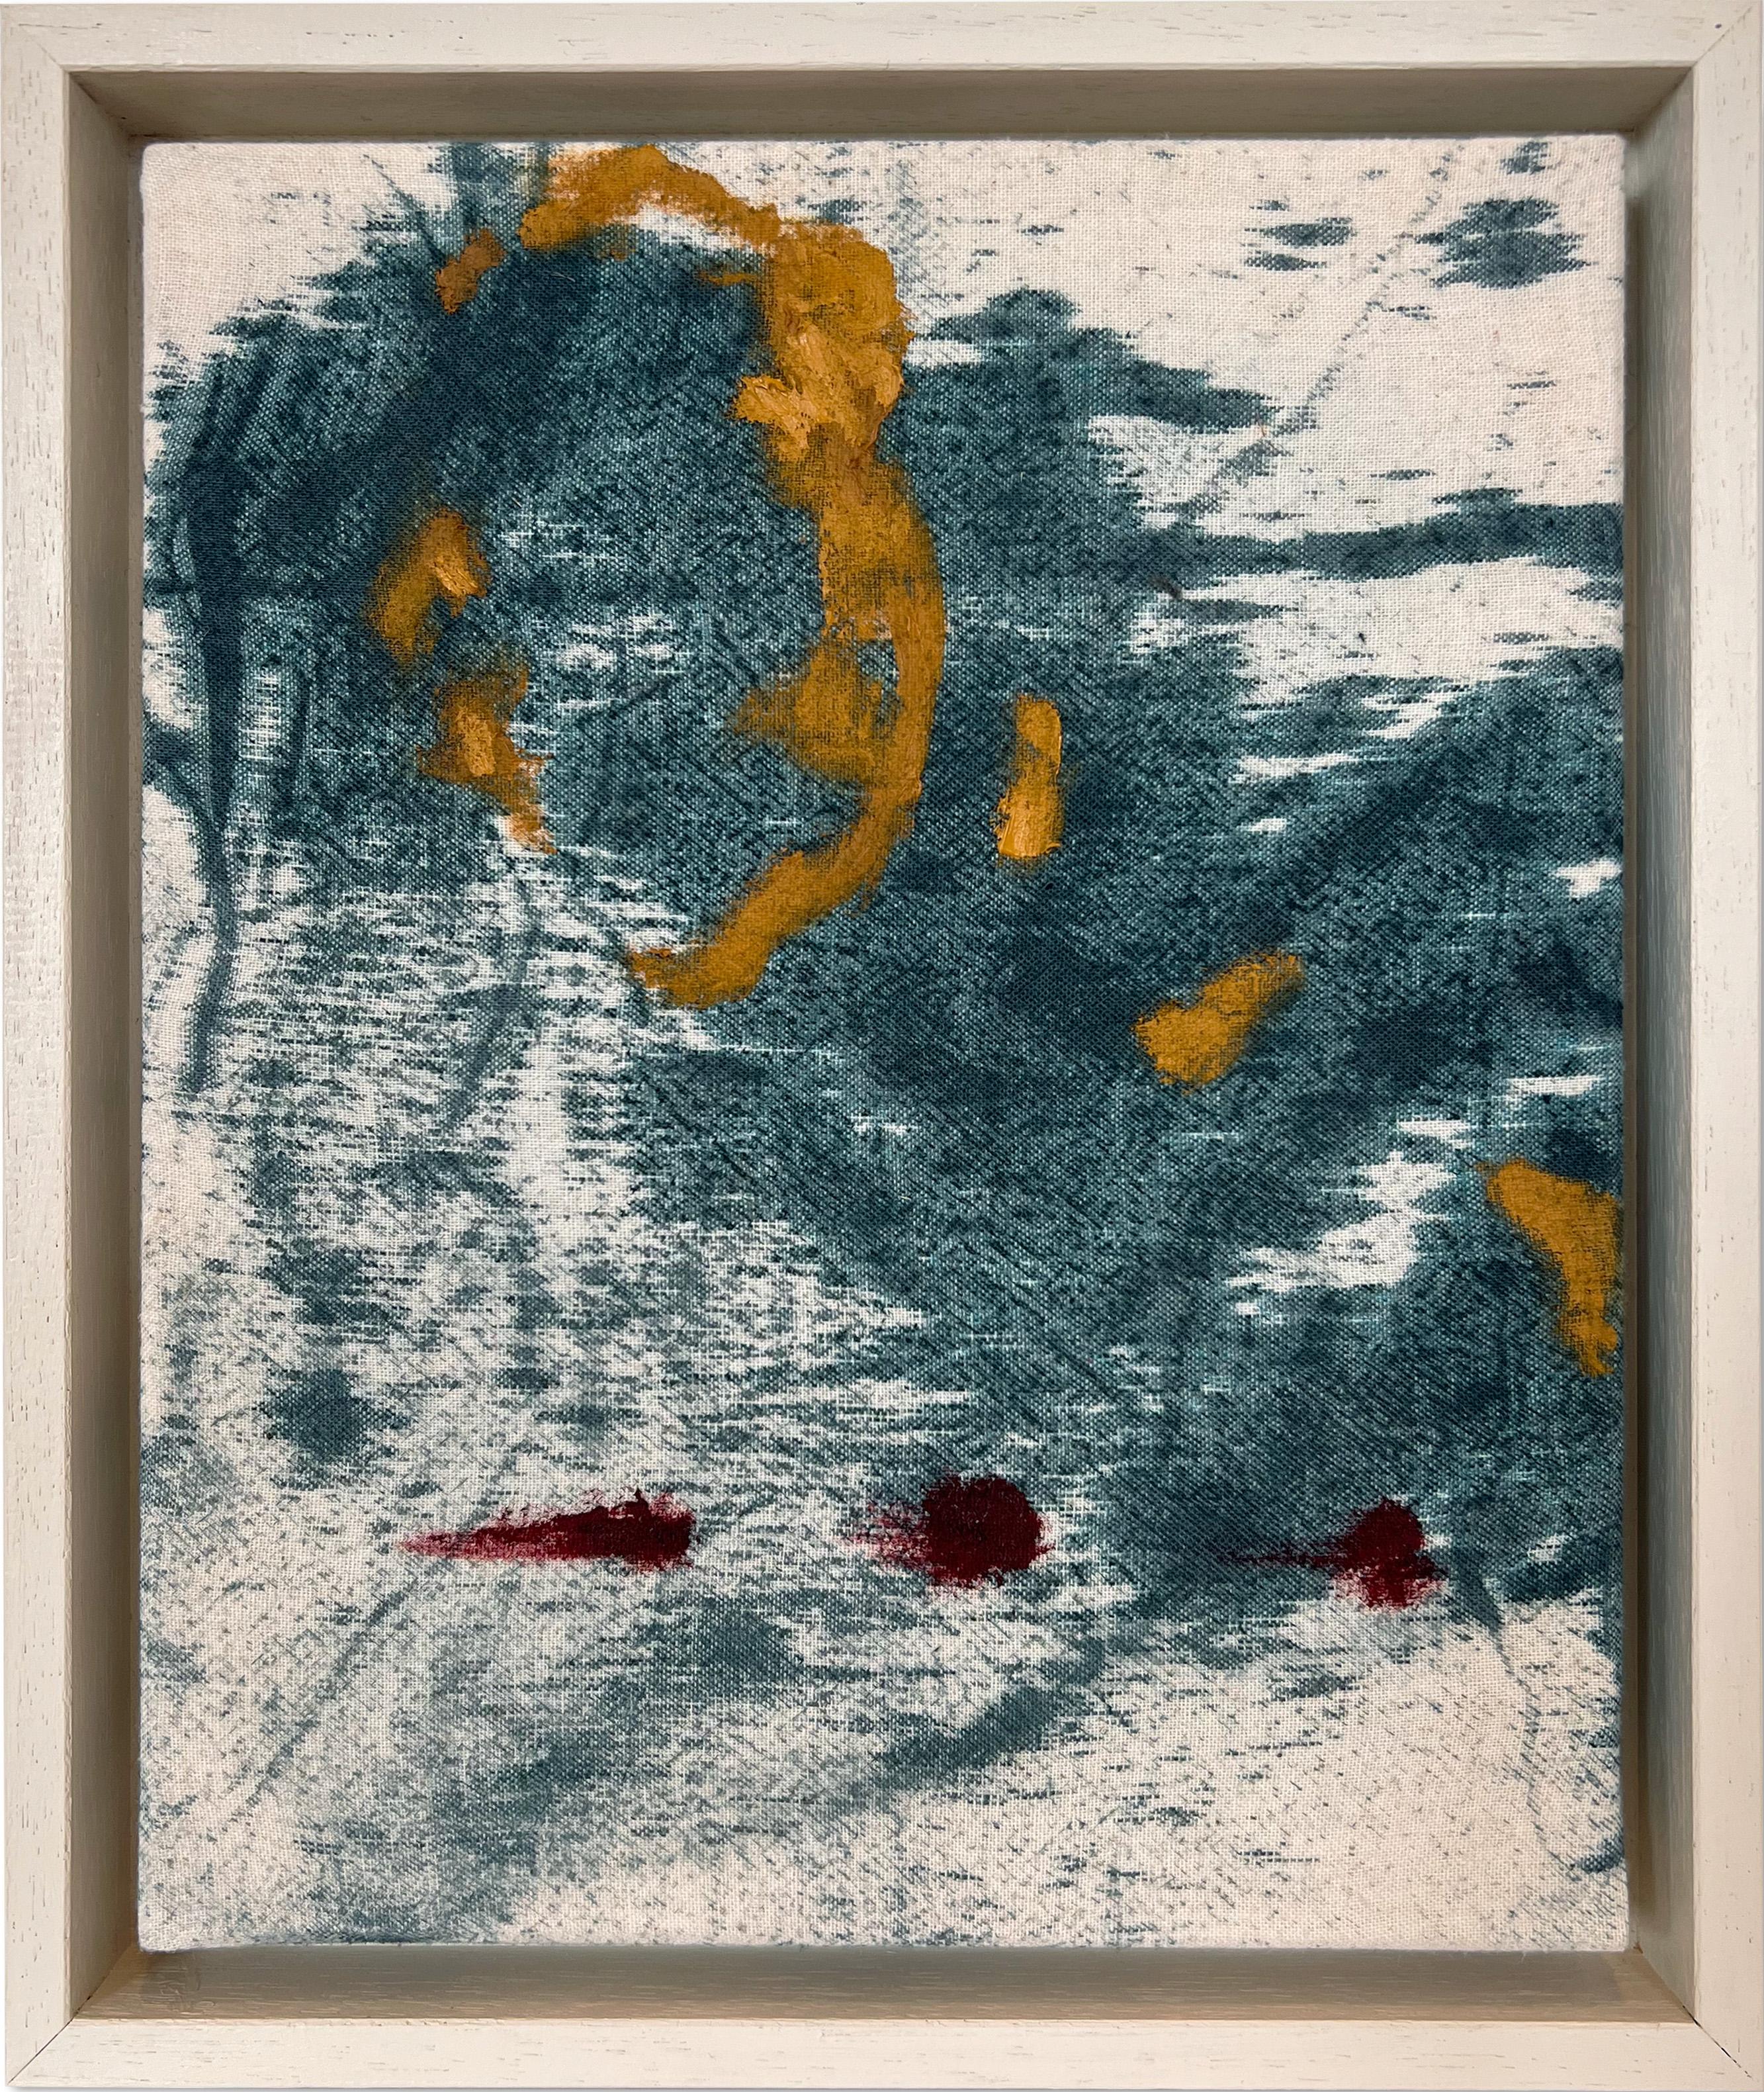 Nicholas Evans Abstract Painting – „Day Remains II“ (abstrakte, blaue Farbgebung, tiefrotes, gelbes Gemälde, gerahmte Baumwolle)